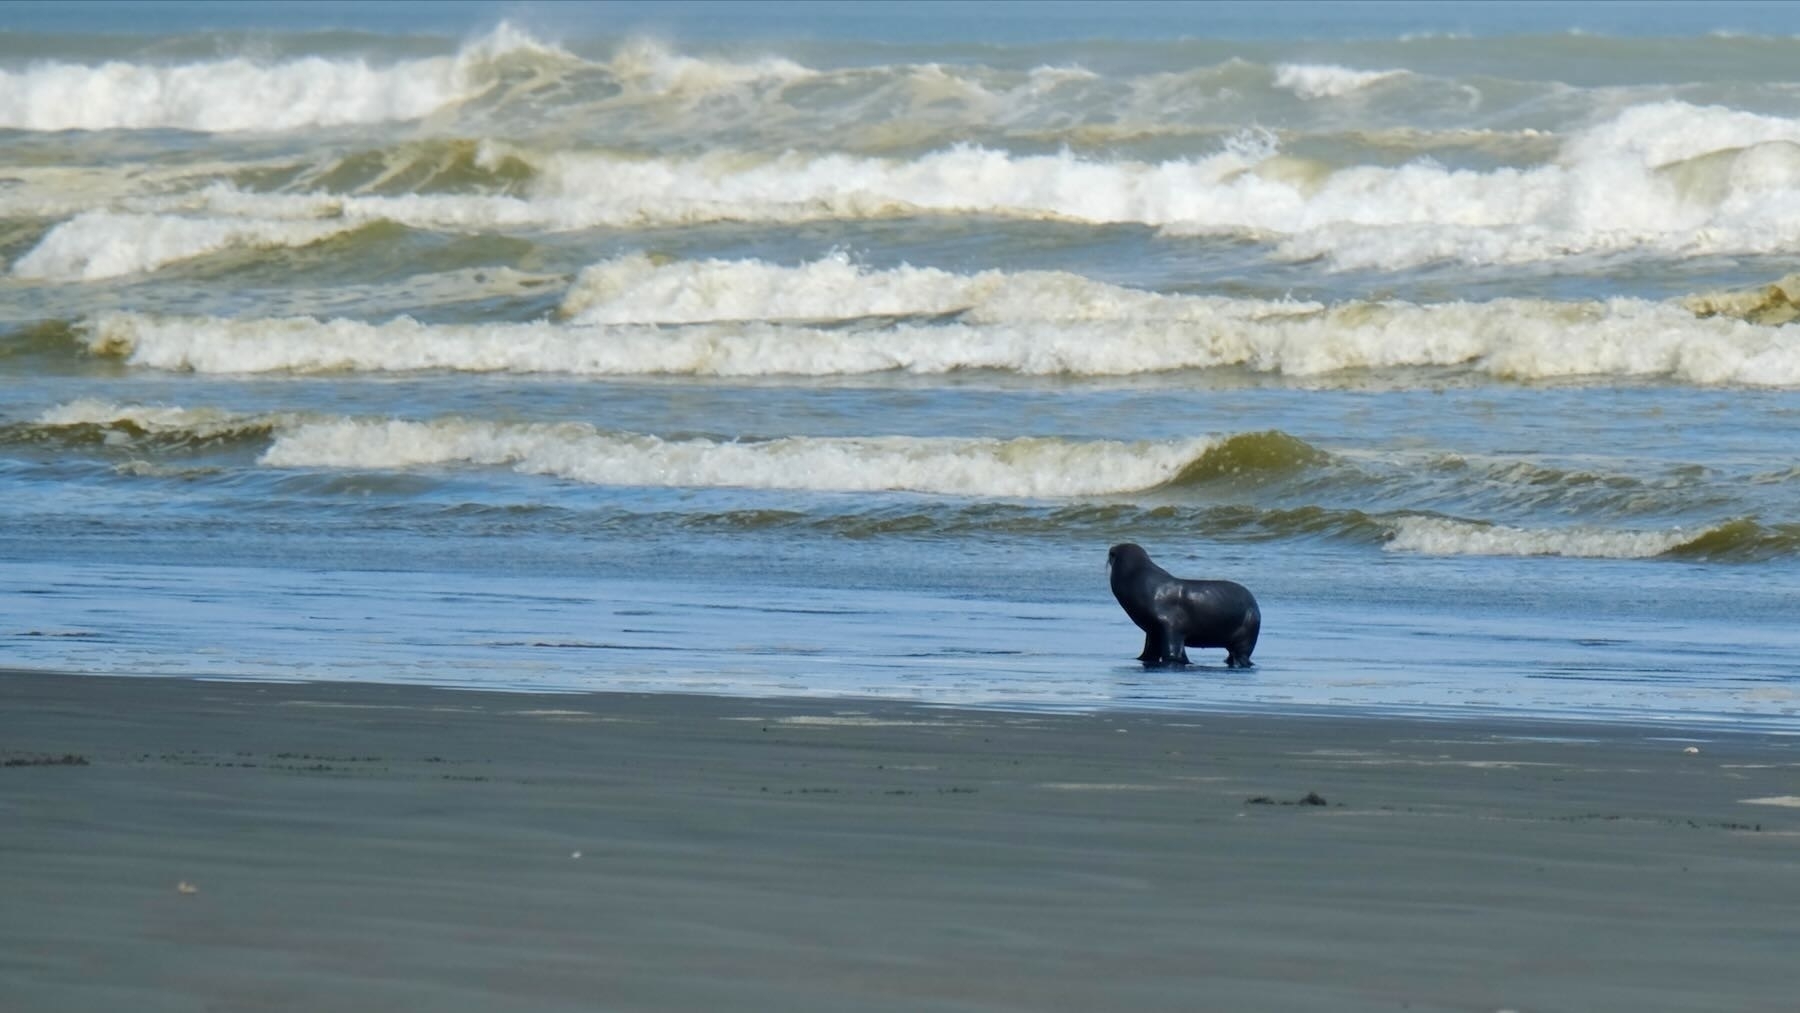 Seal on the beach.